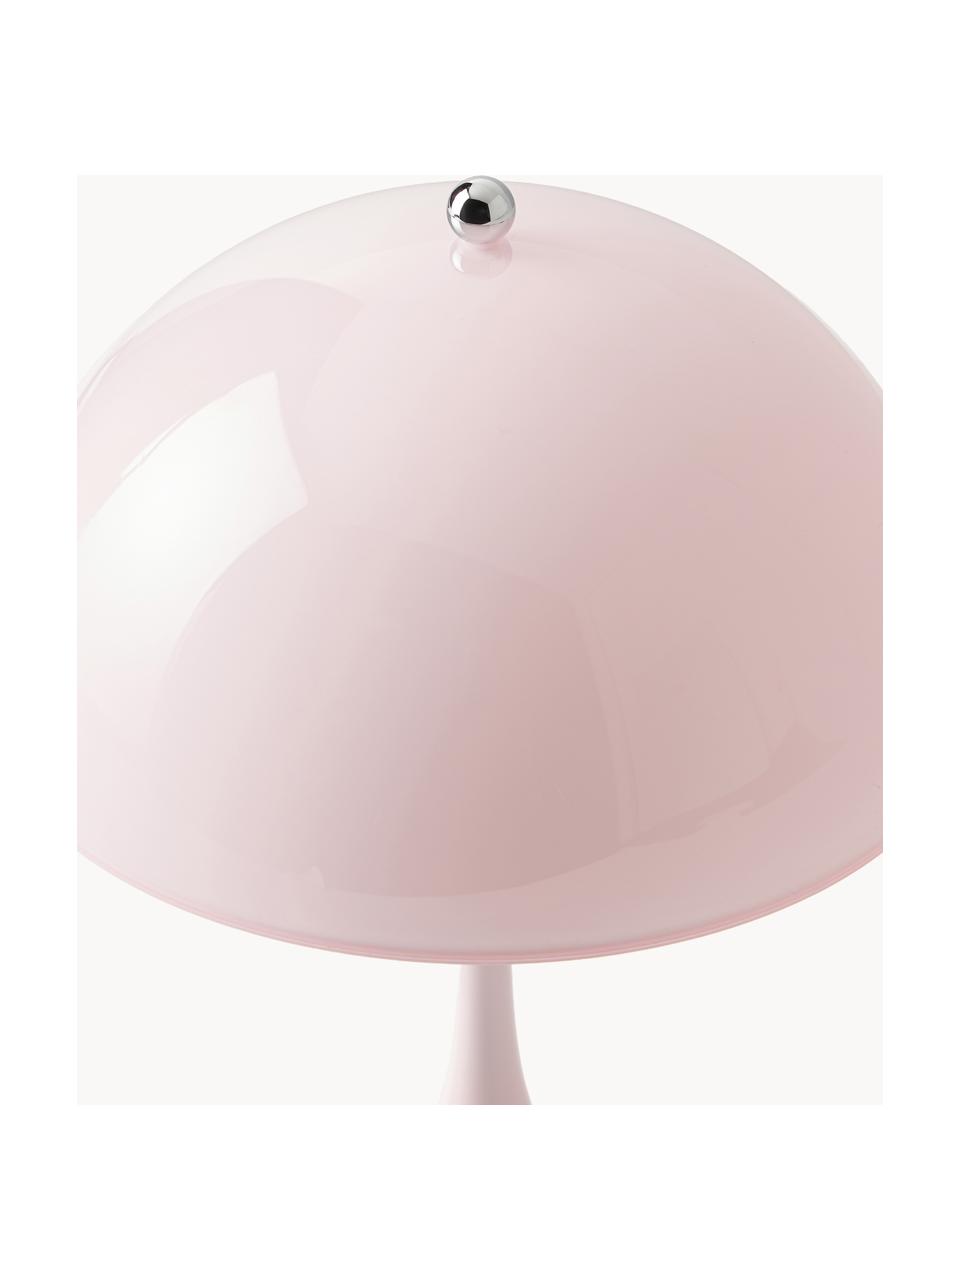 Mobilna lampa stołowa LED z funkcją przyciemniania Panthella, W 24 cm, Stelaż: aluminium powlekane, Jasnoróżowa stal, Ø 16 x 24 cm